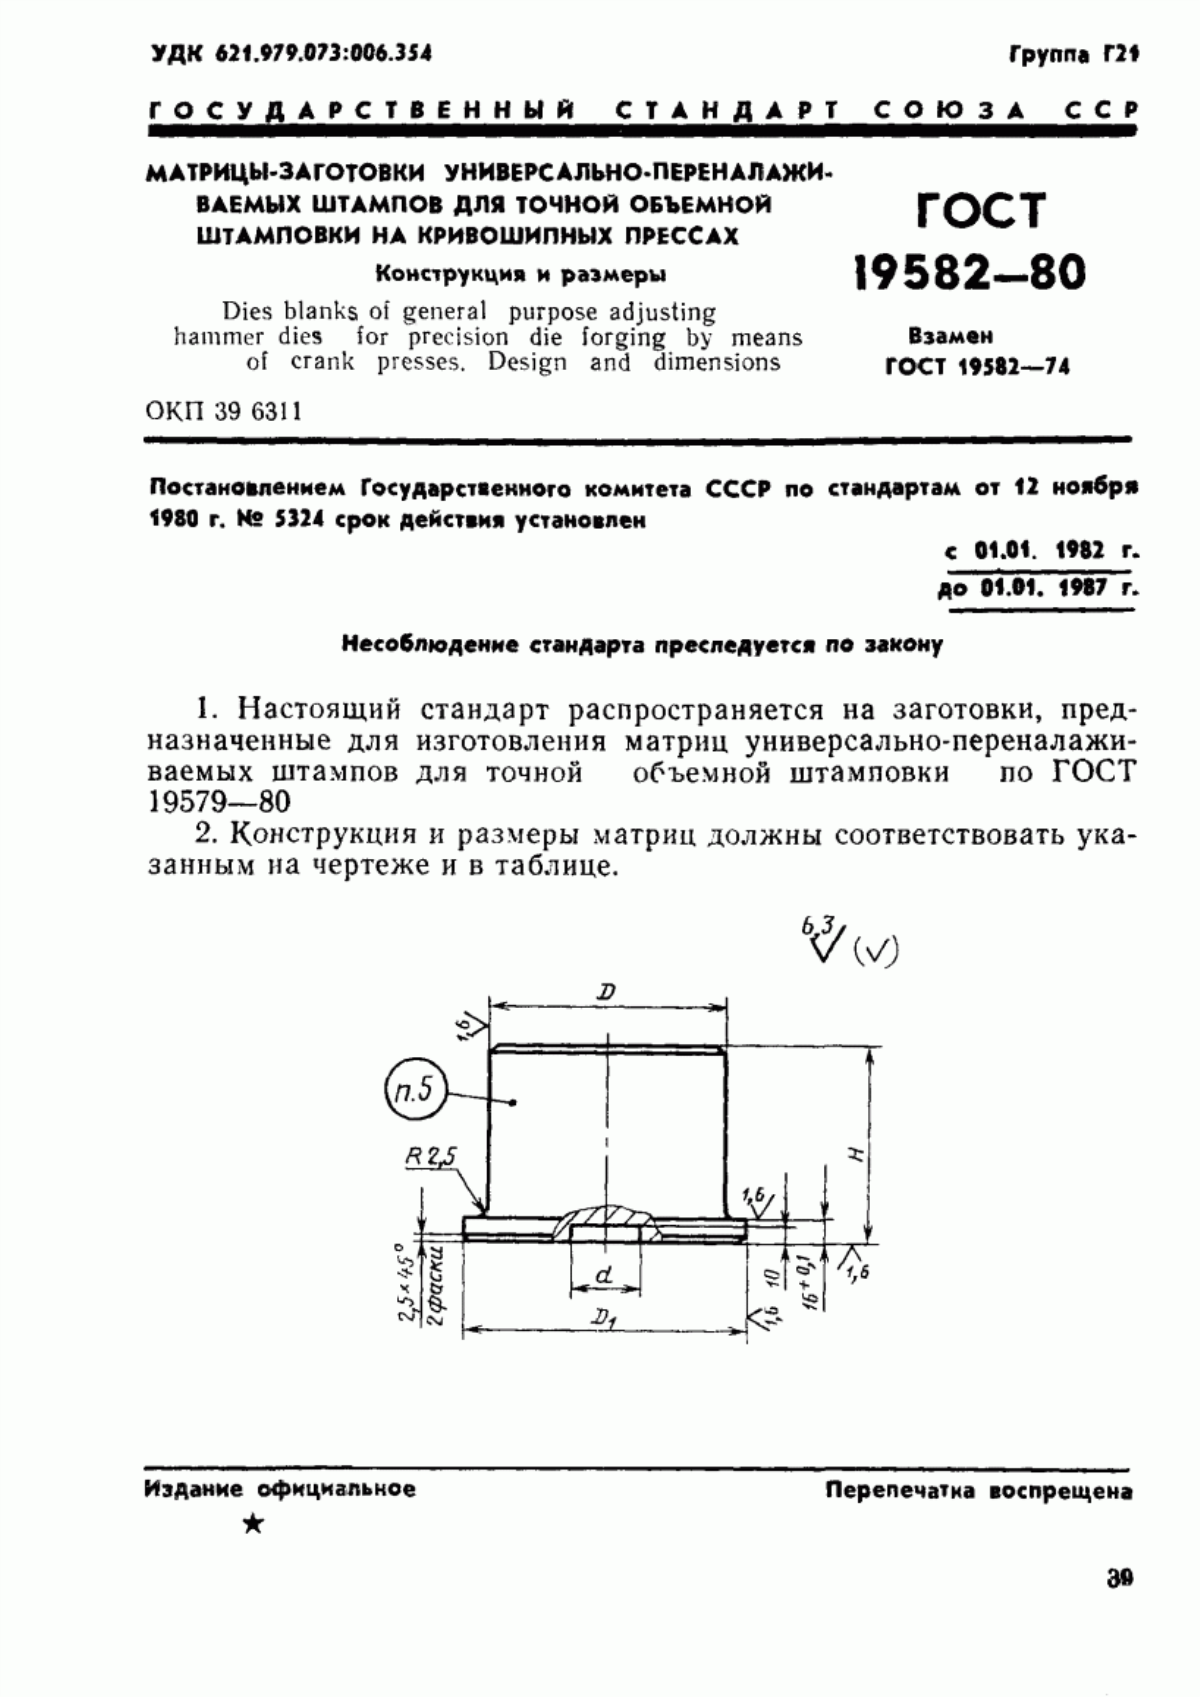 ГОСТ 19582-80 Матрицы-заготовки универсально-переналаживаемых штампов для точной объемной штамповки на кривошипных прессах. Конструкция и размеры